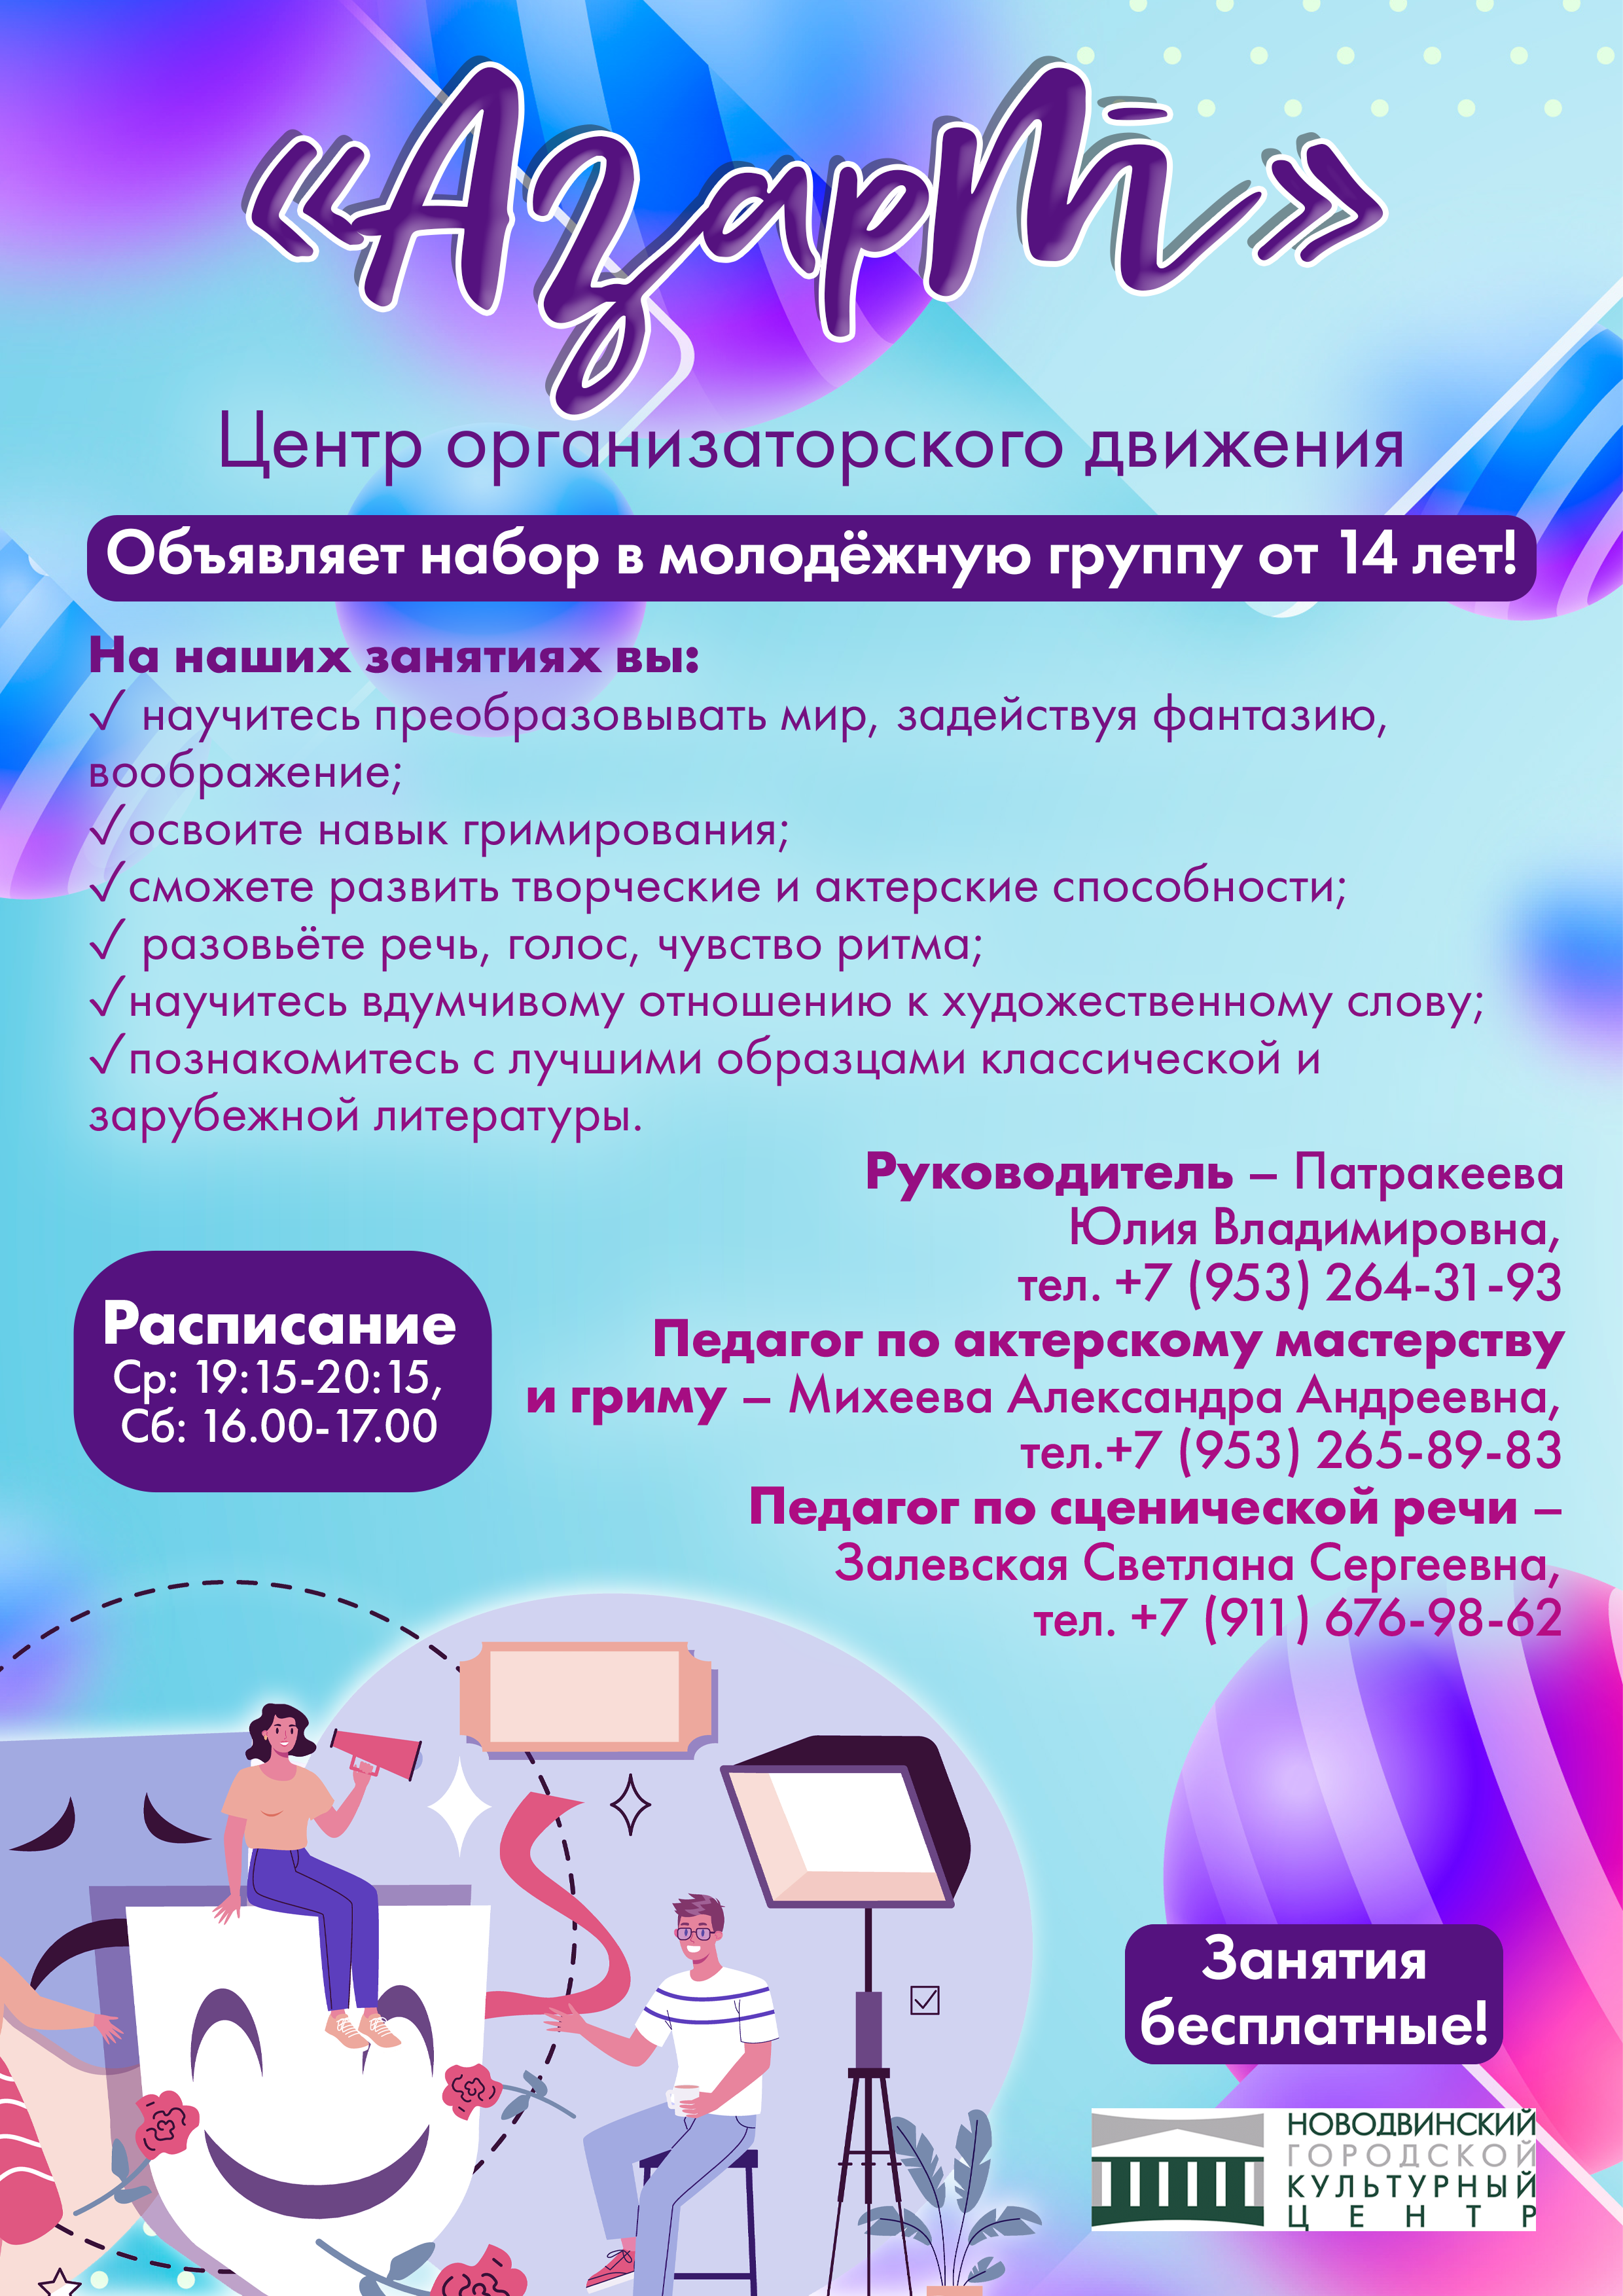 Уважаемые жители Новодвинска! Мы приглашаем вас в наше новое клубное формирование — центр организаторского движения «Азарт»!